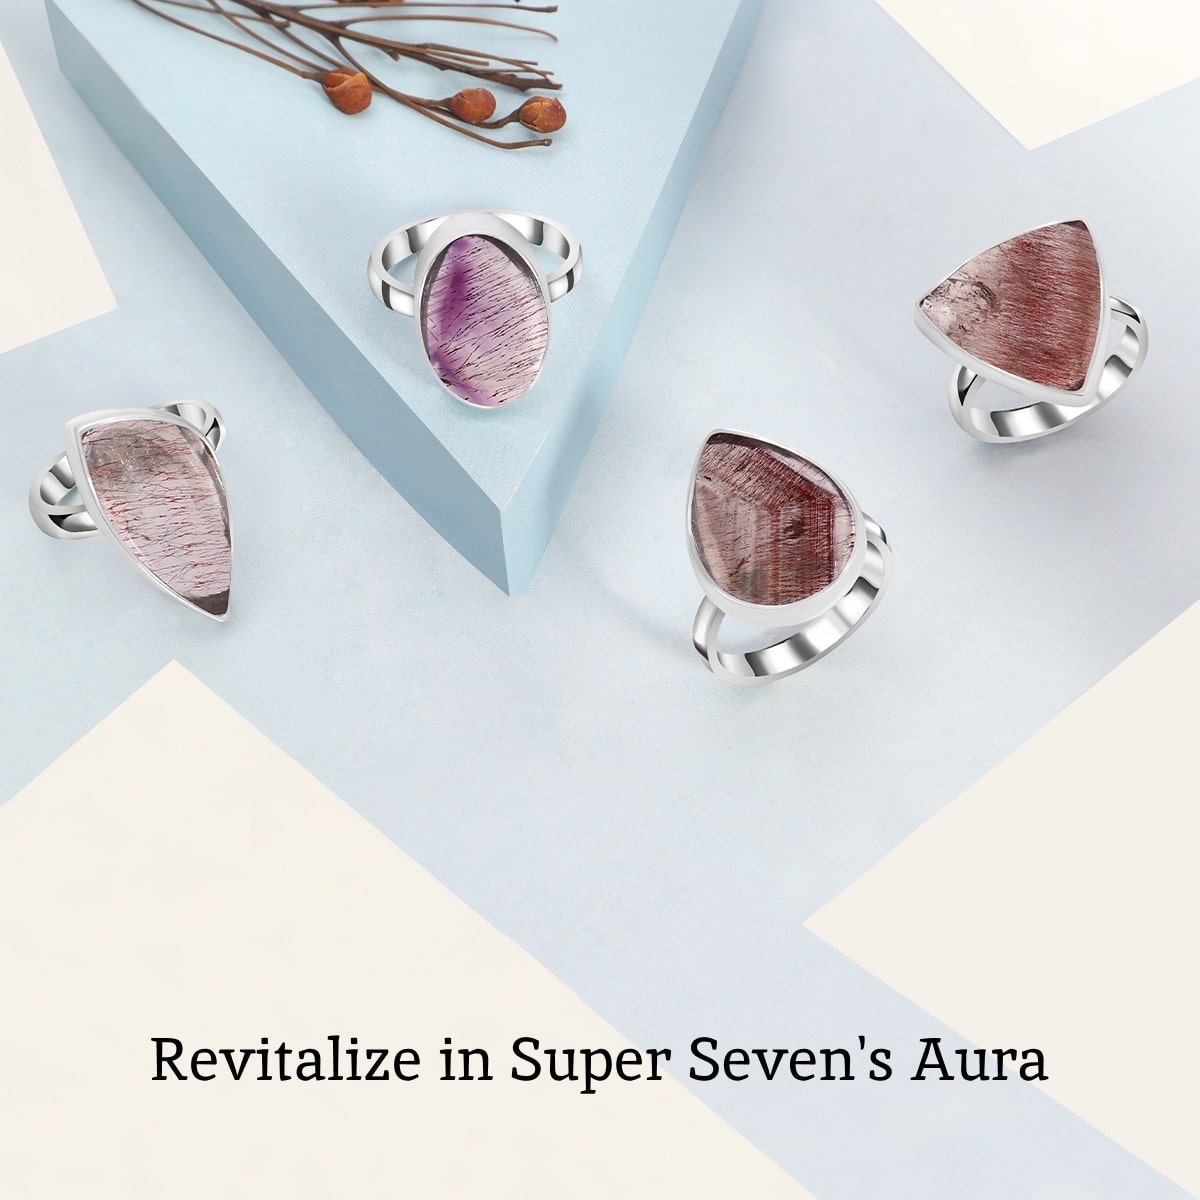 Healing Properties of Super Seven Jewelry